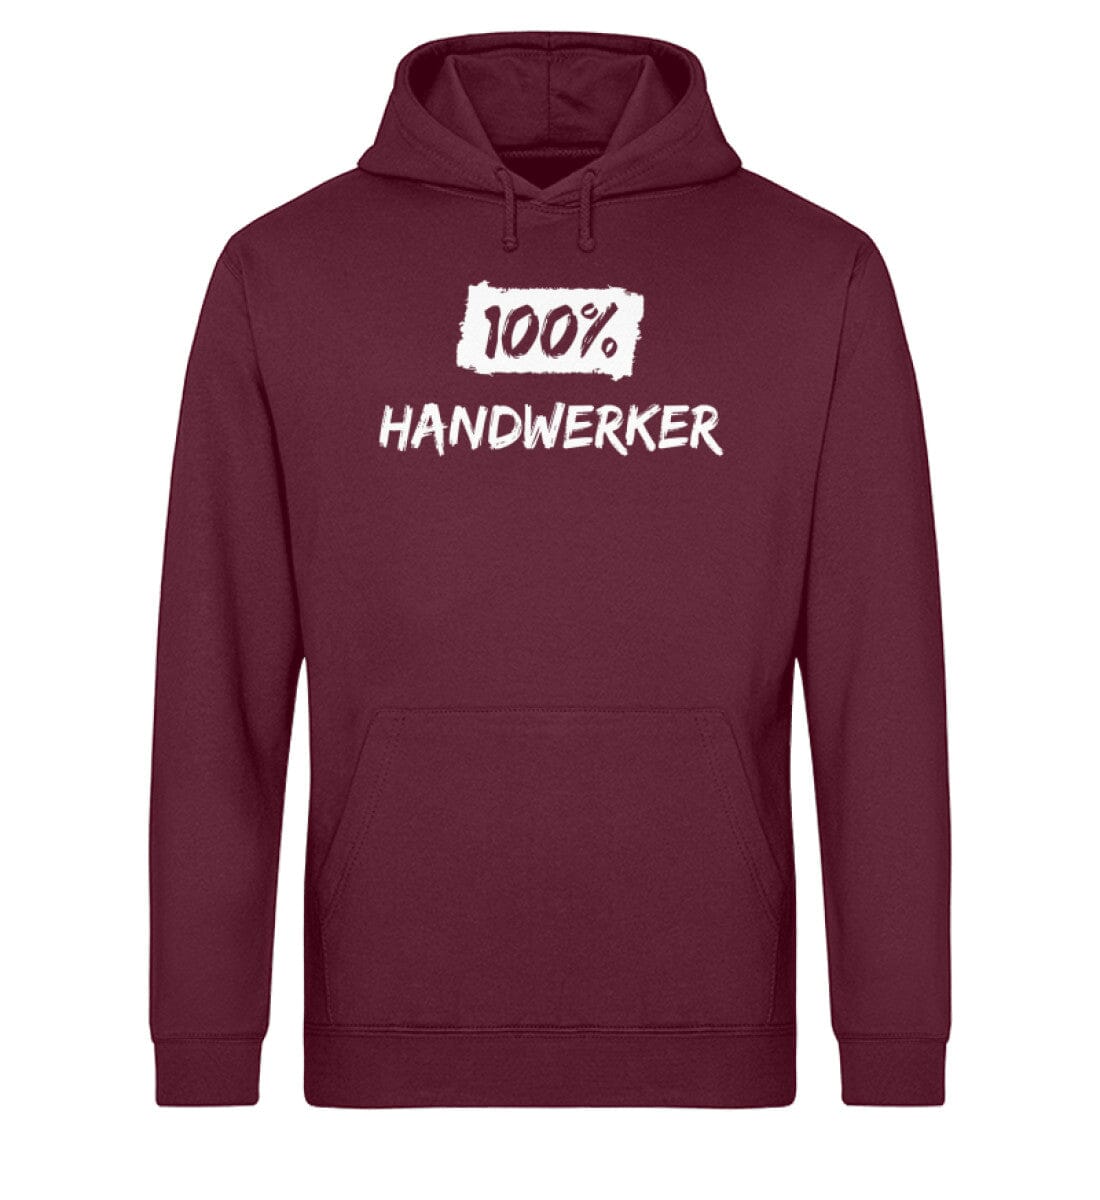 100% Handwerker - Unisex Bio Hoodie Burgundy XS 